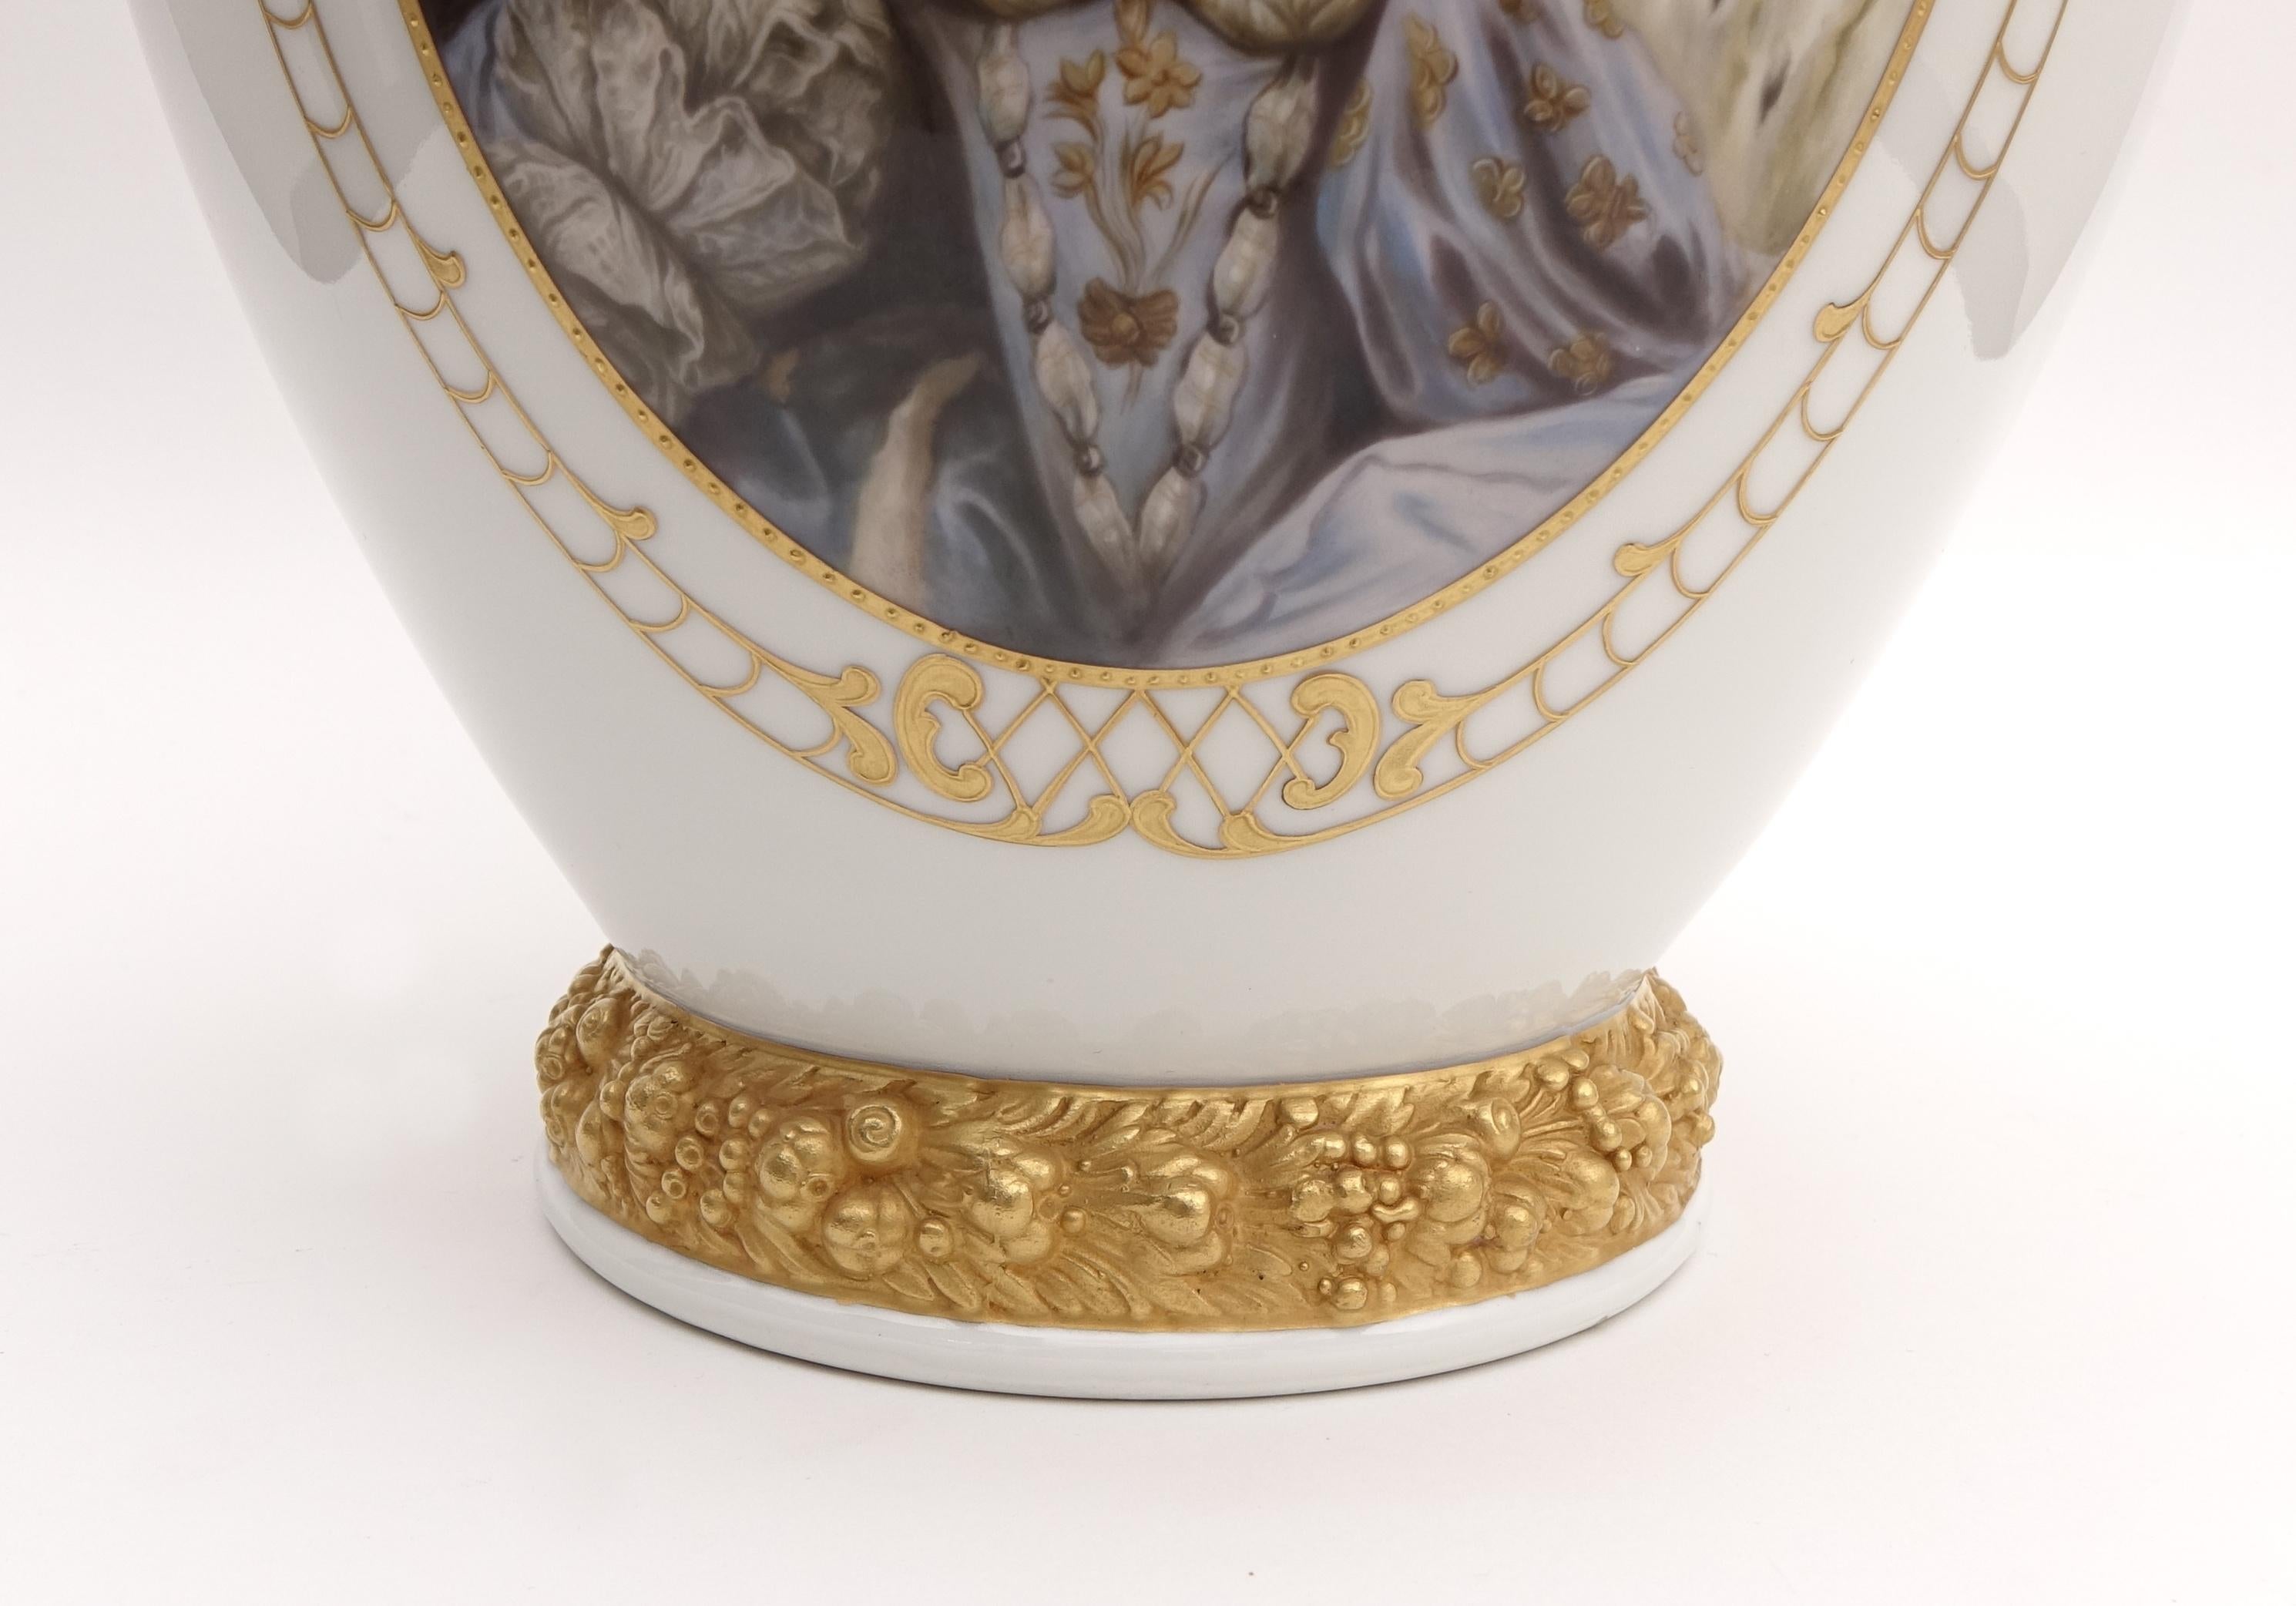 Baroque Porcelain Vase Depicting Maria Antonietta